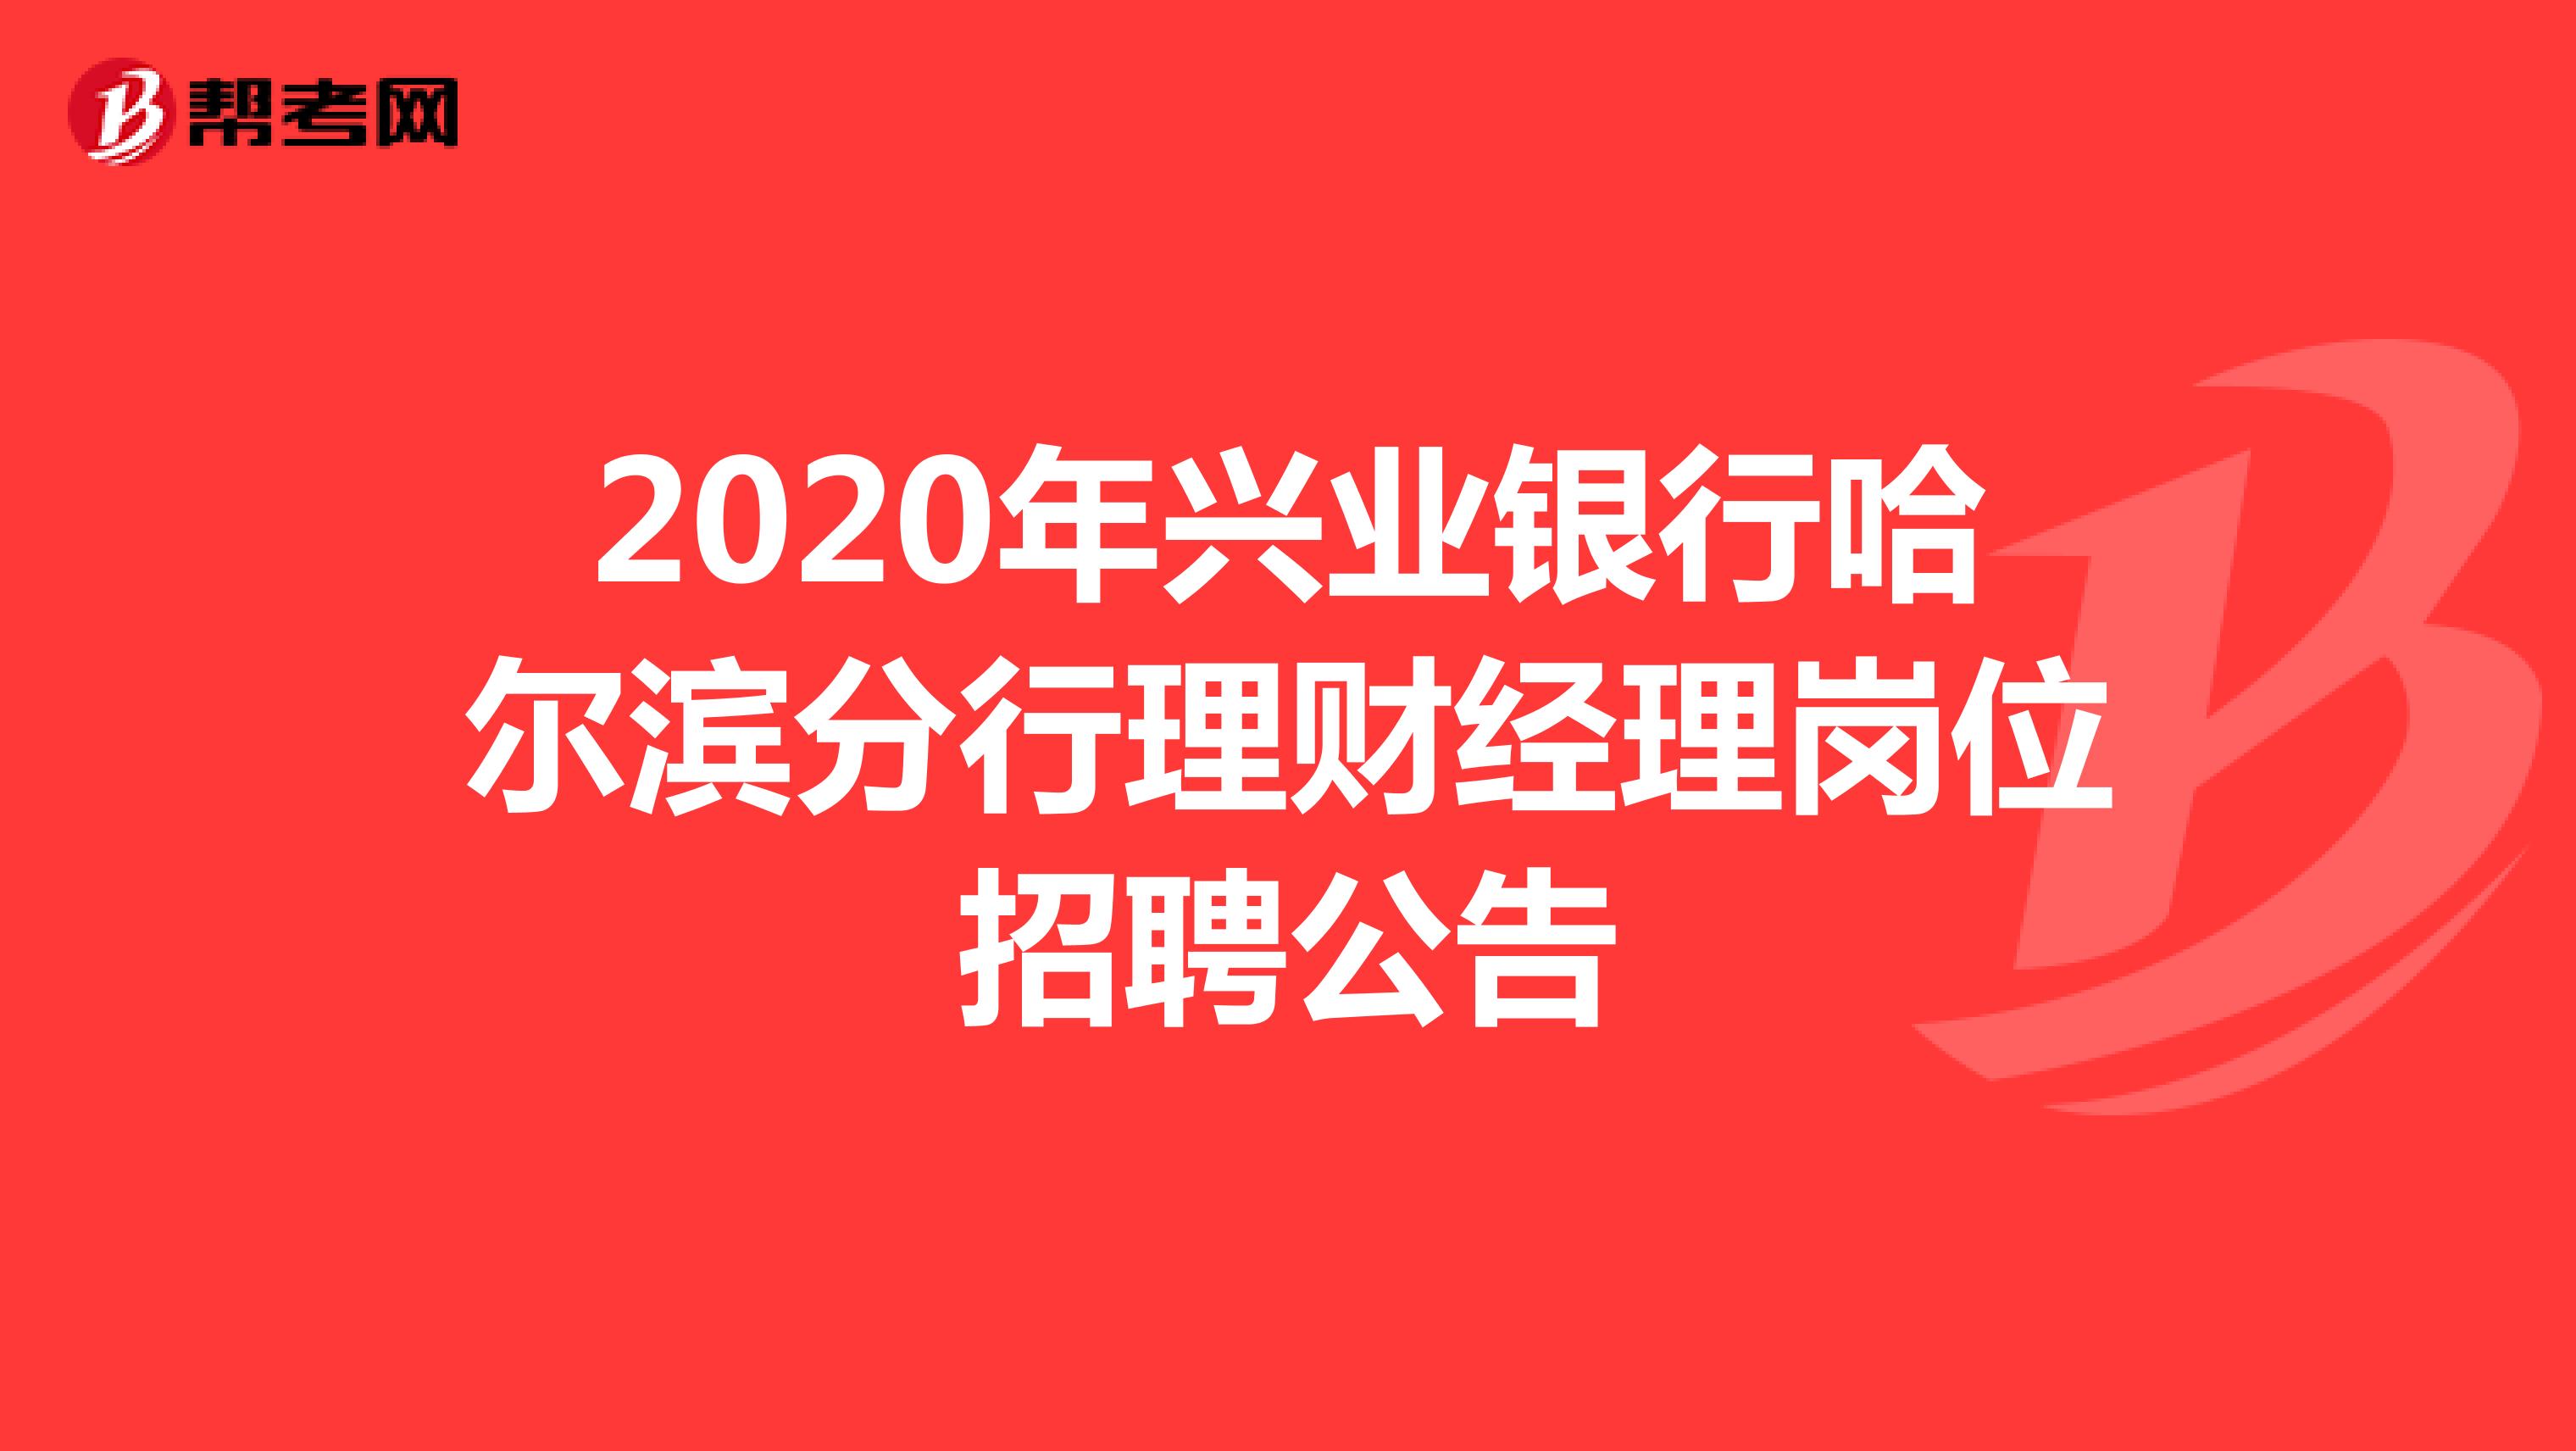 2020年兴业银行哈尔滨分行理财经理岗位招聘公告